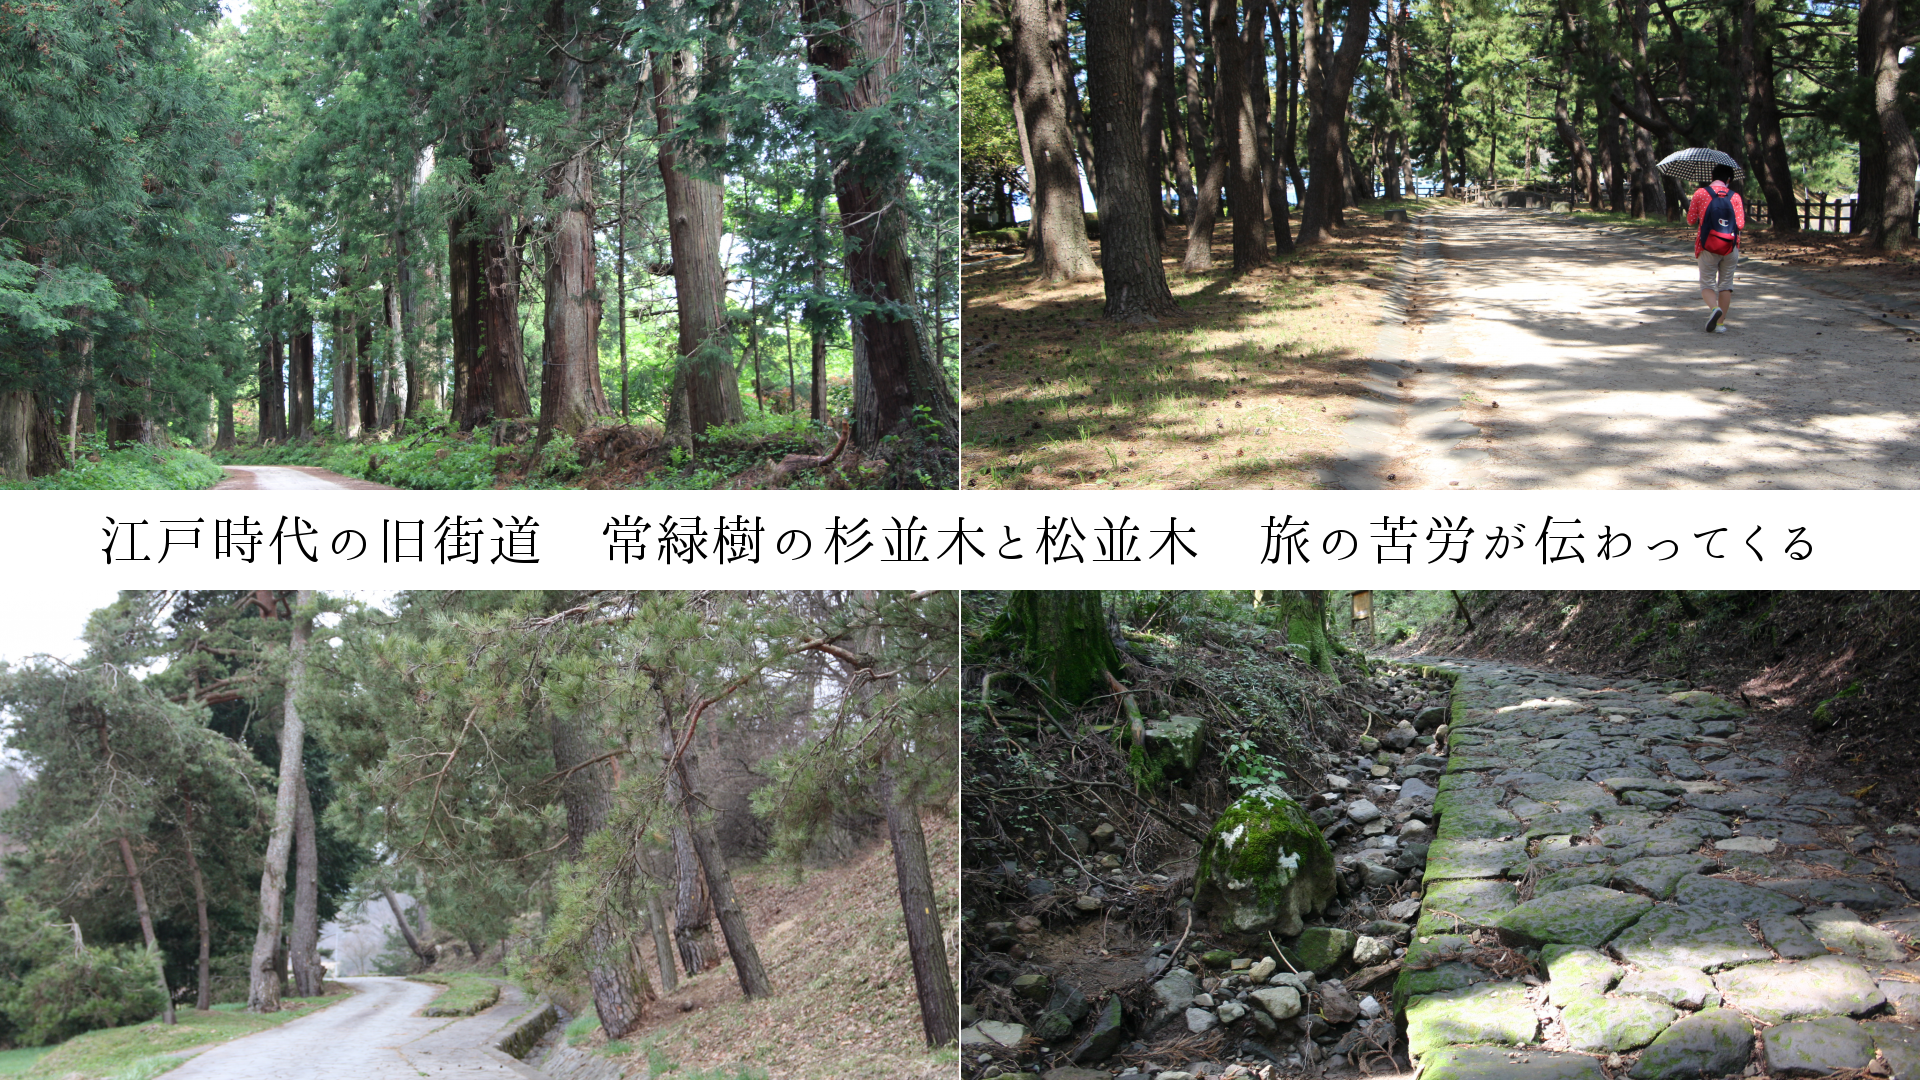 江戸時代の旧街道　常緑樹の杉並木と松並木　旅の苦労が伝わってくる